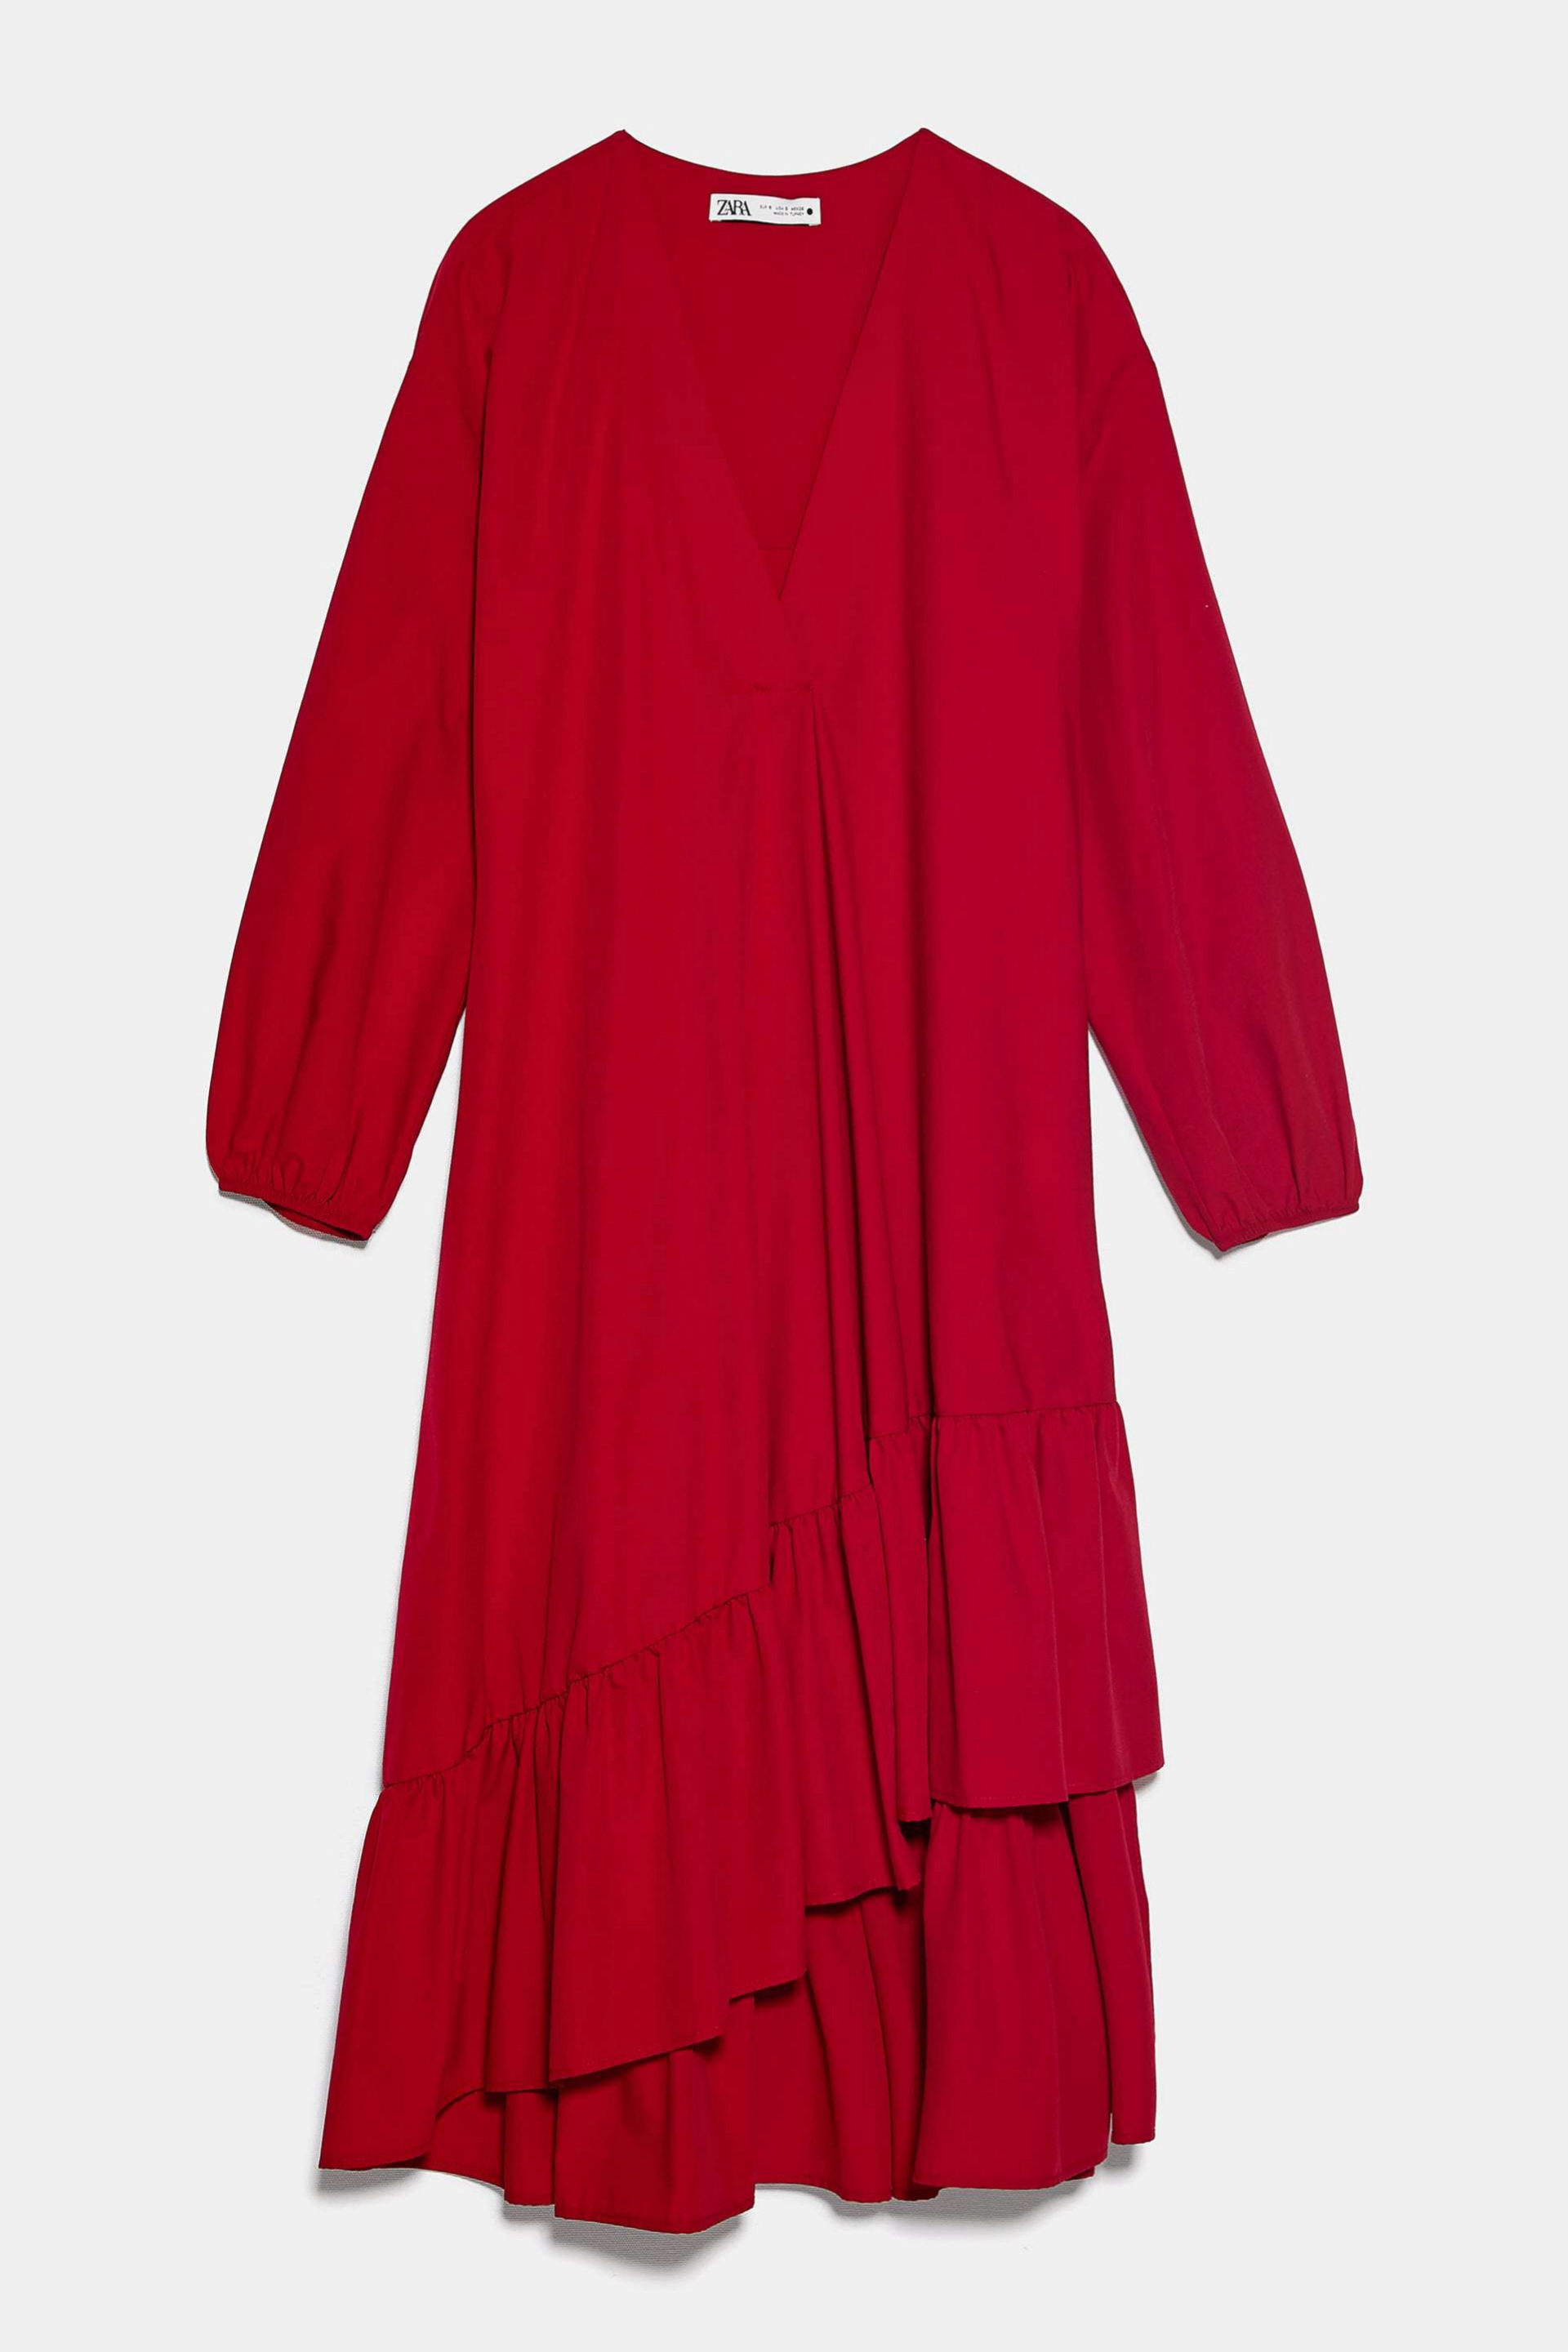 Vestido de popeln en color rojo de Zara (39,95)